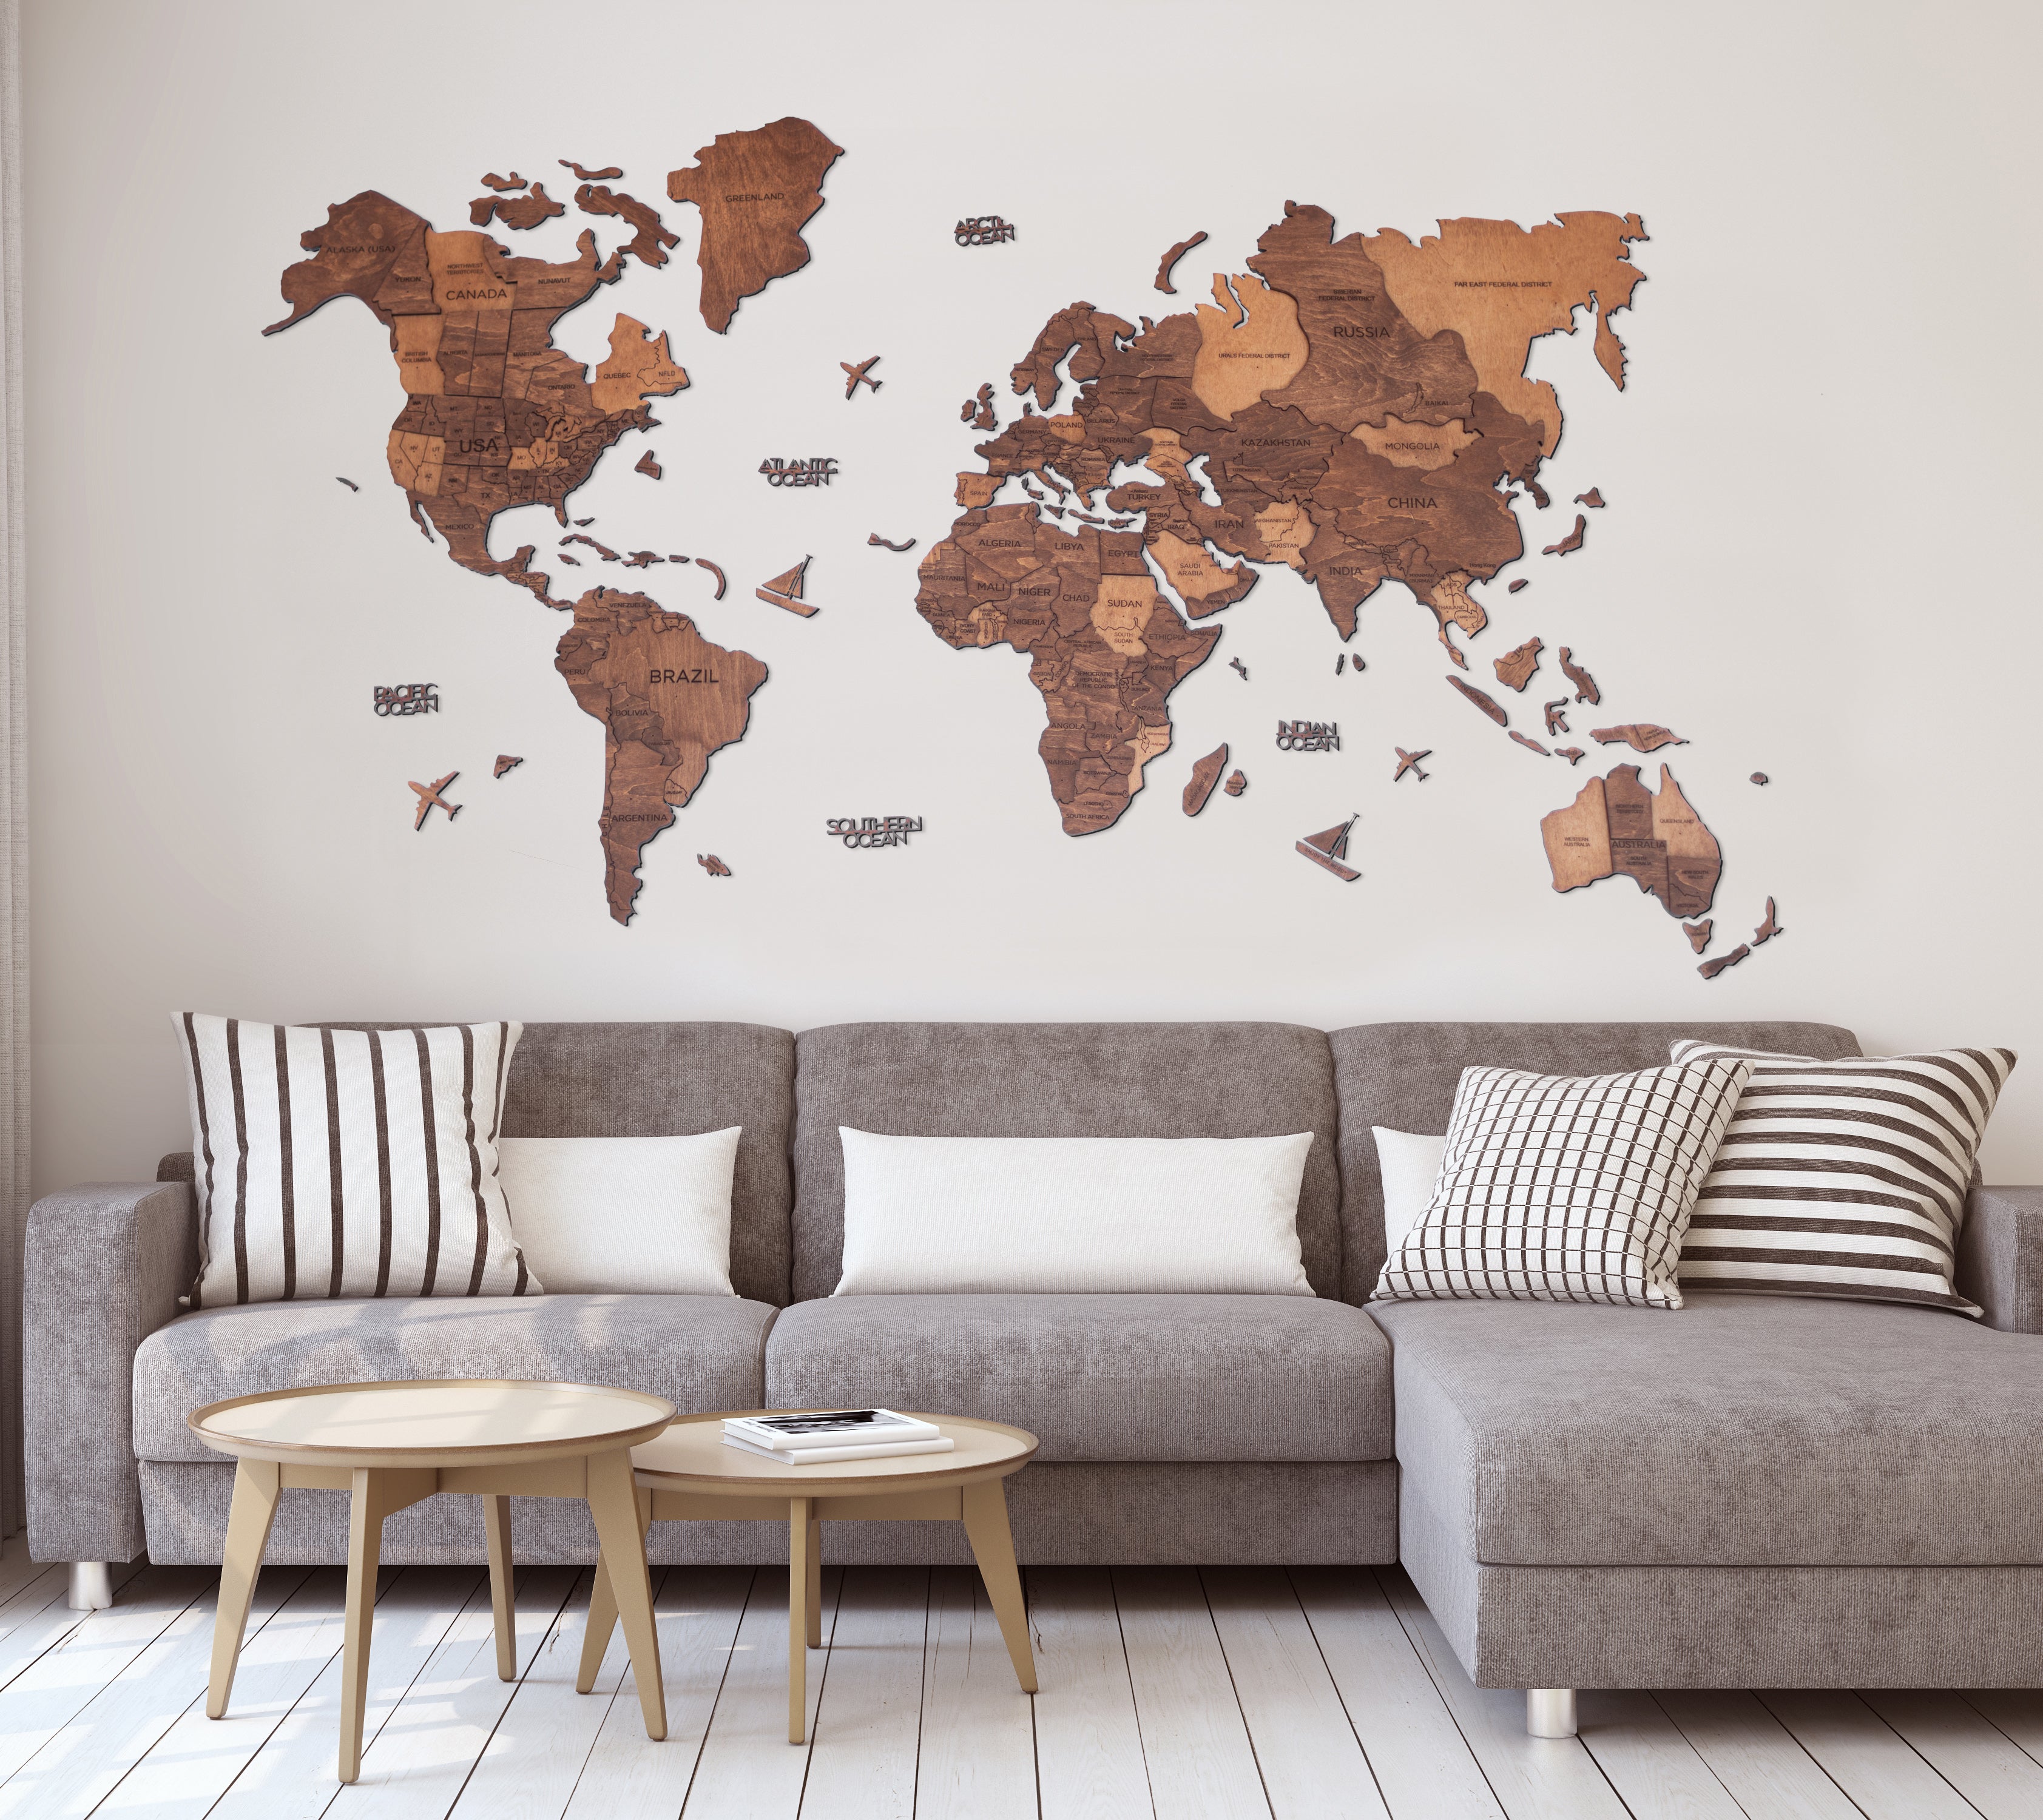 3d Wood World Map オークカラー 壁掛け木製世界地図 翌日出荷 Enjoy The Wood 日本公式サイト 壁掛け木製世界地図 通販